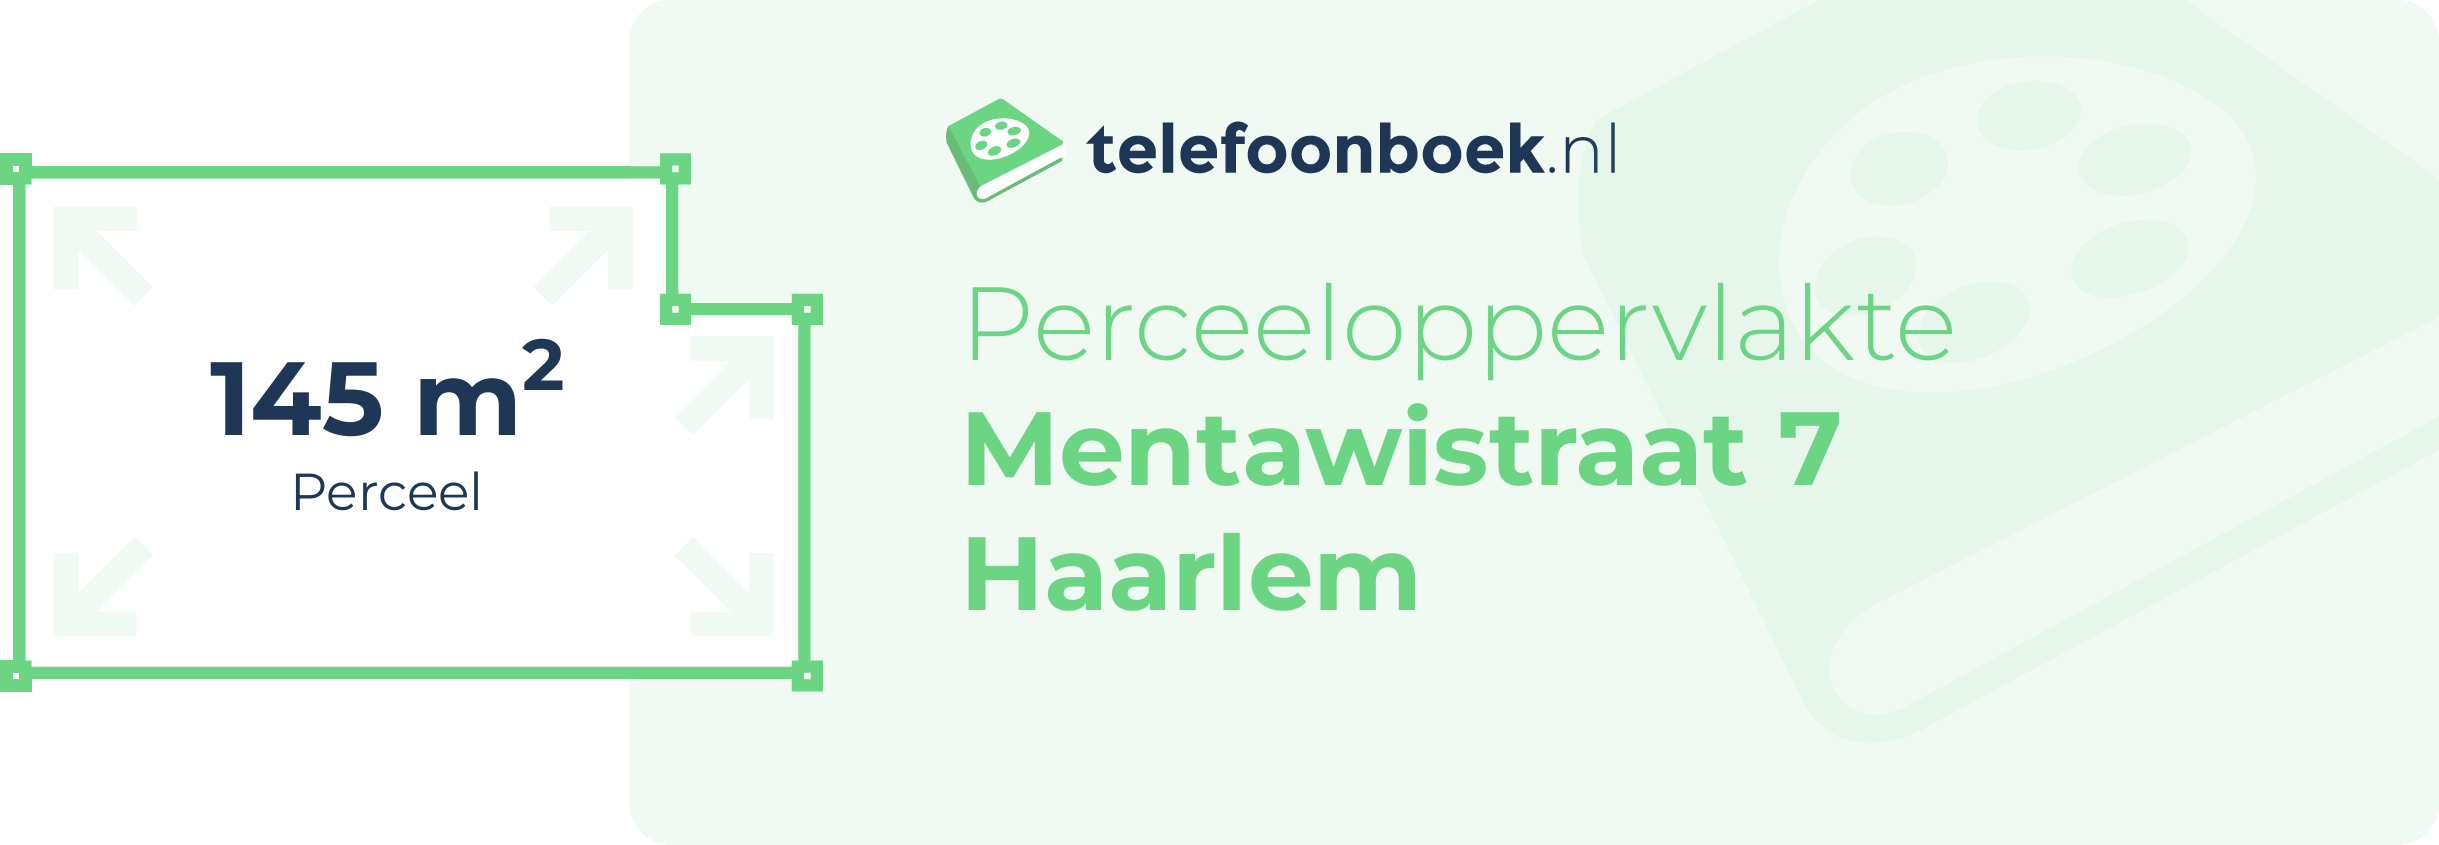 Perceeloppervlakte Mentawistraat 7 Haarlem